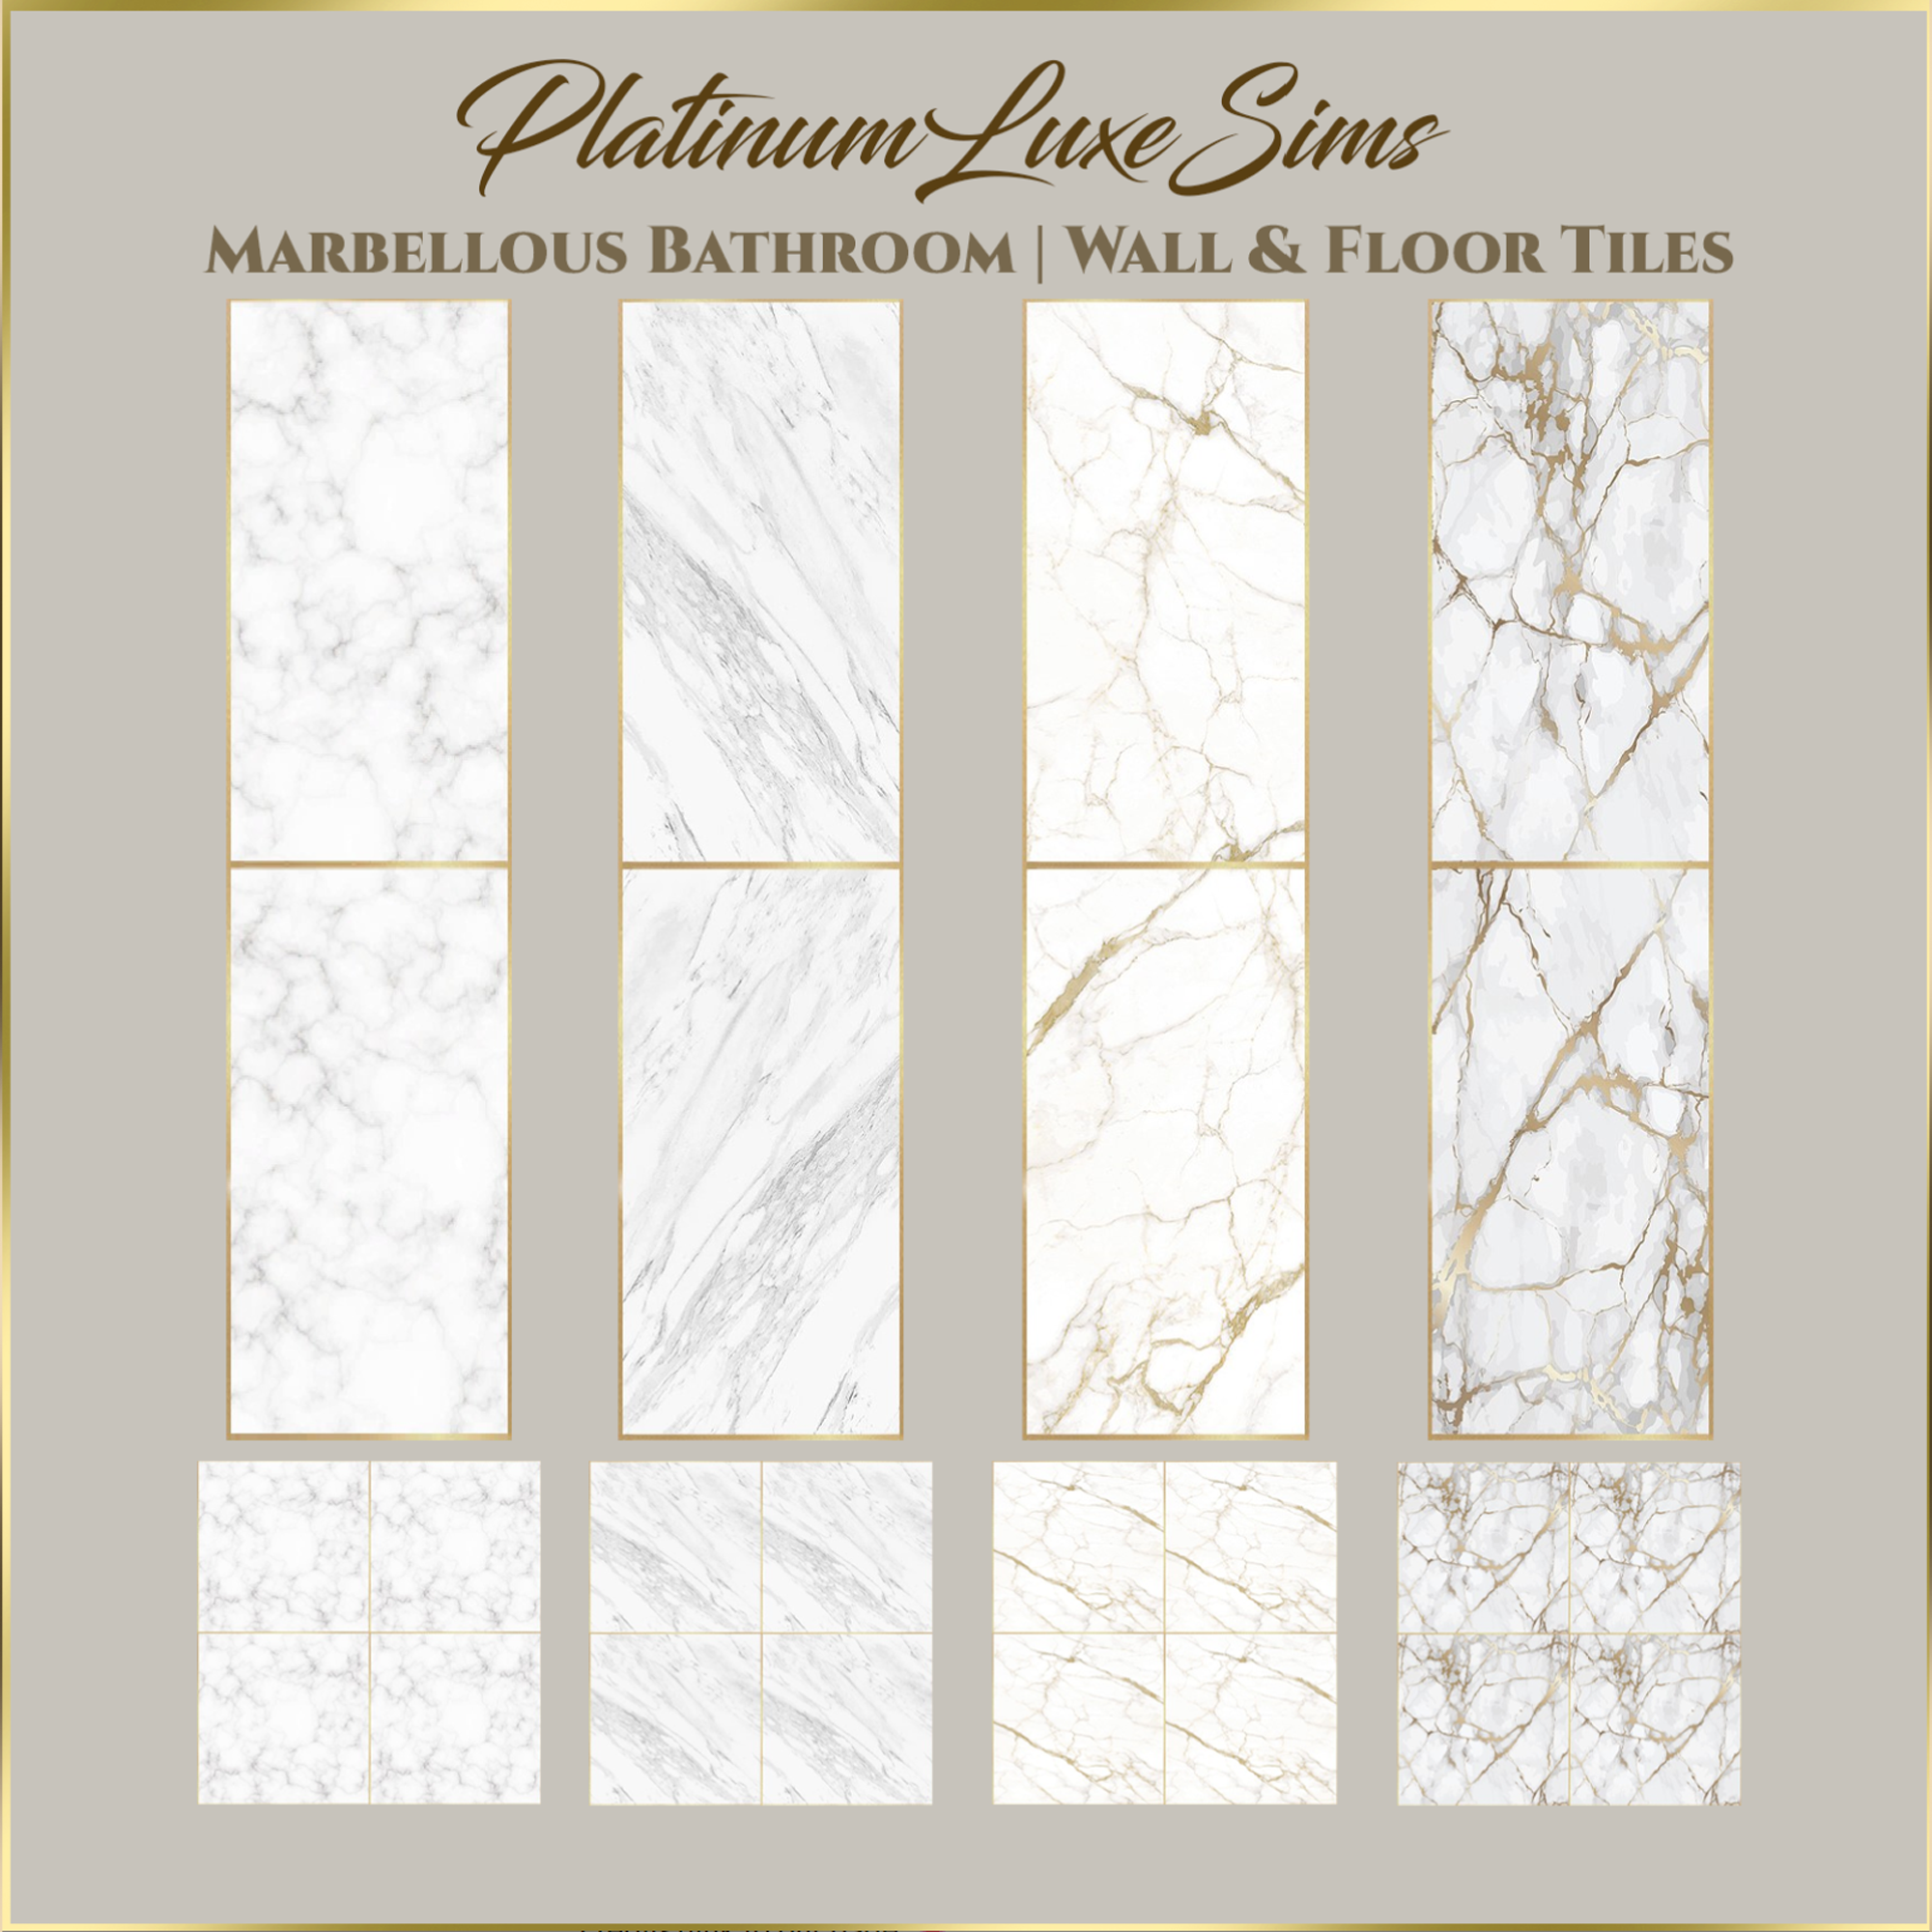 Marbellous Bathroom - Wall & Floor Tiles project avatar